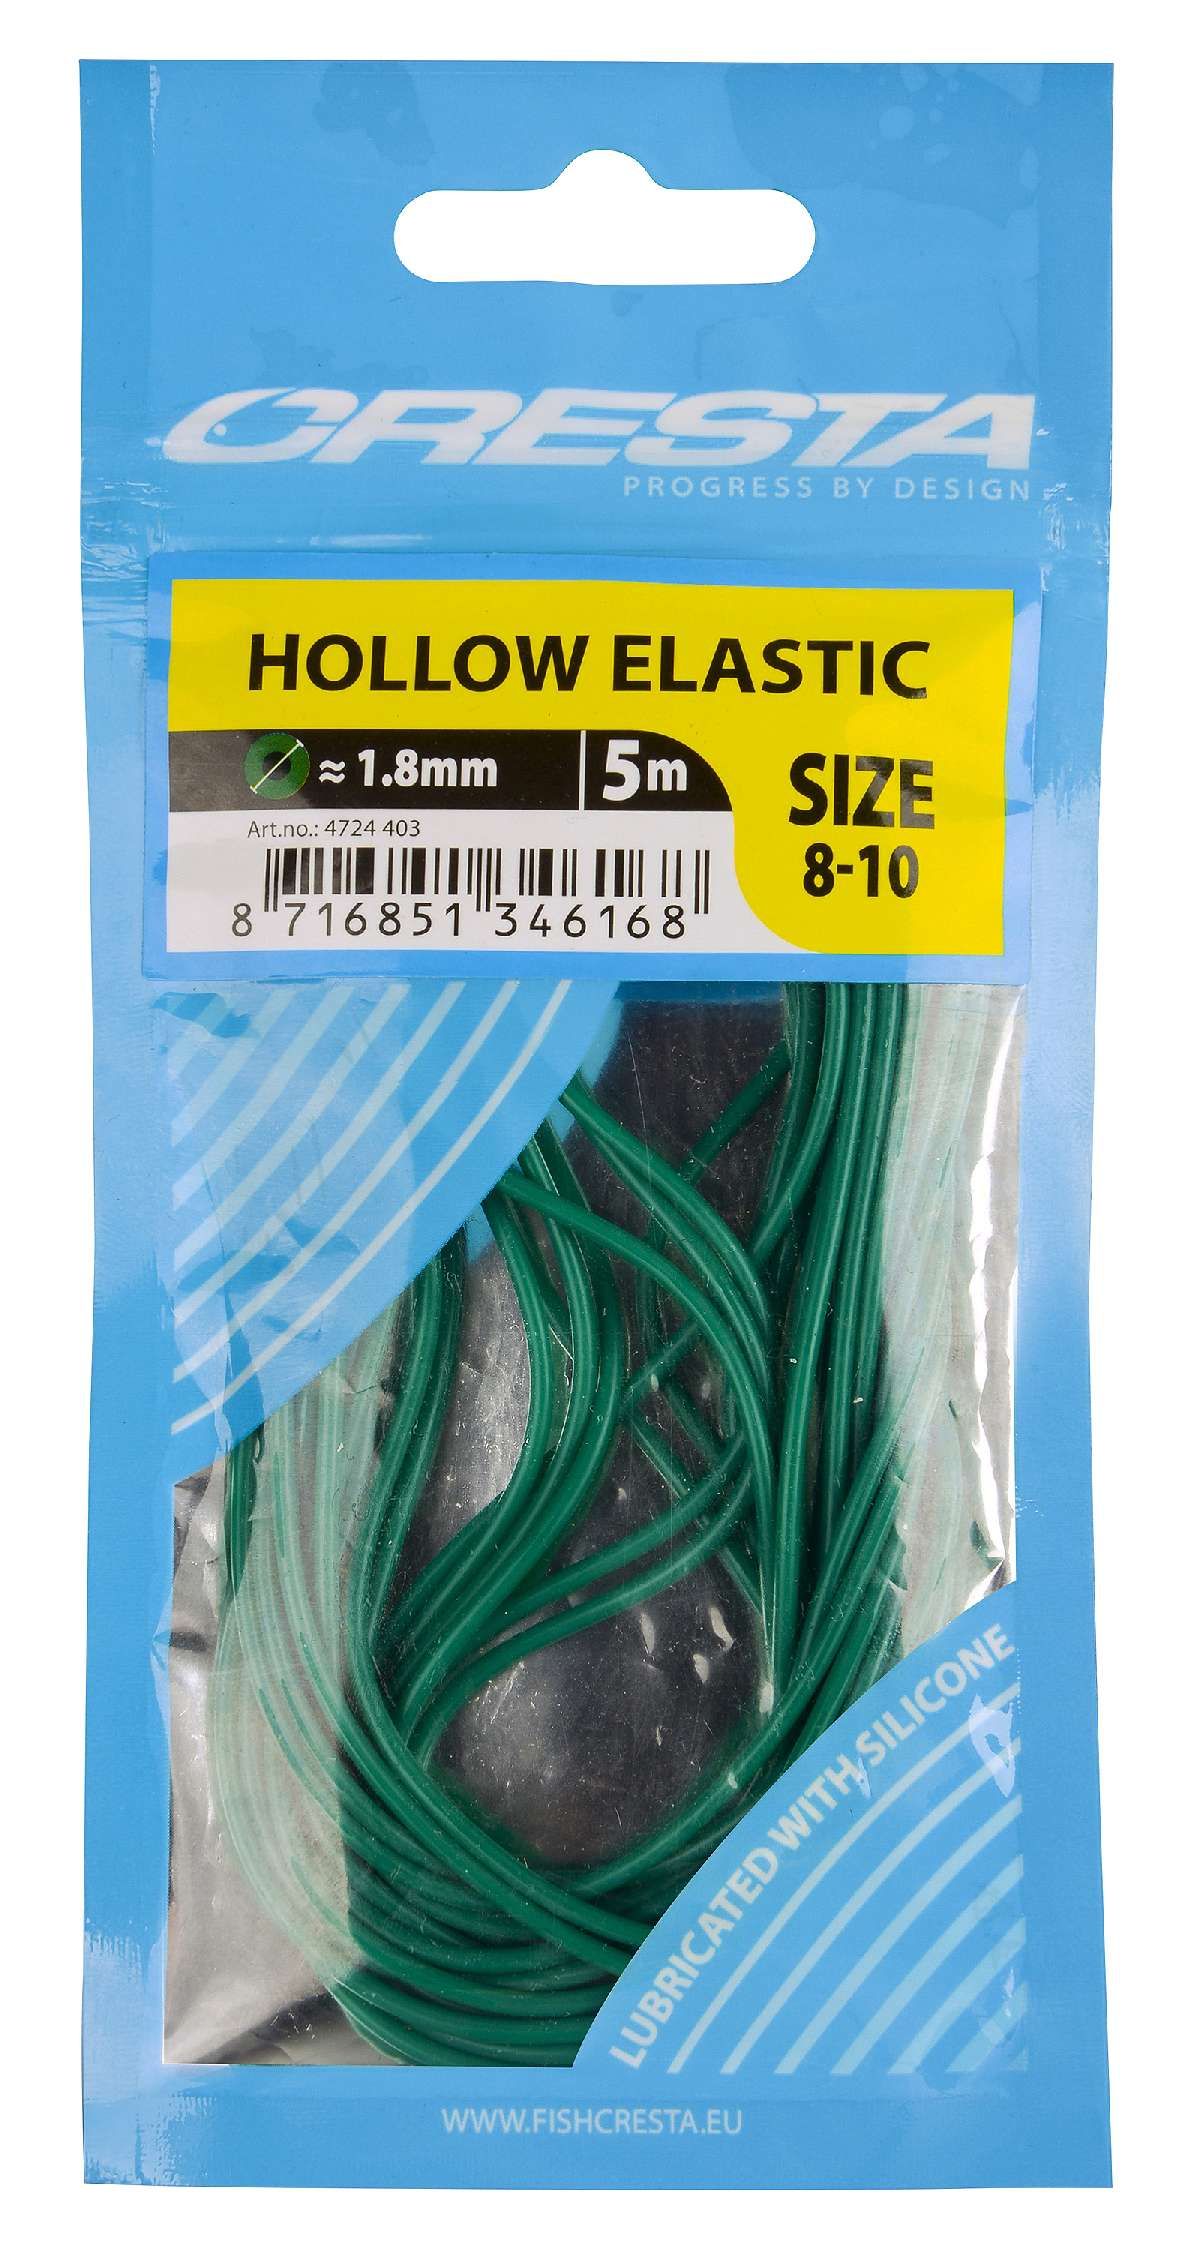 Cresta Hollow Elastic 1.8 mm  5 m  green